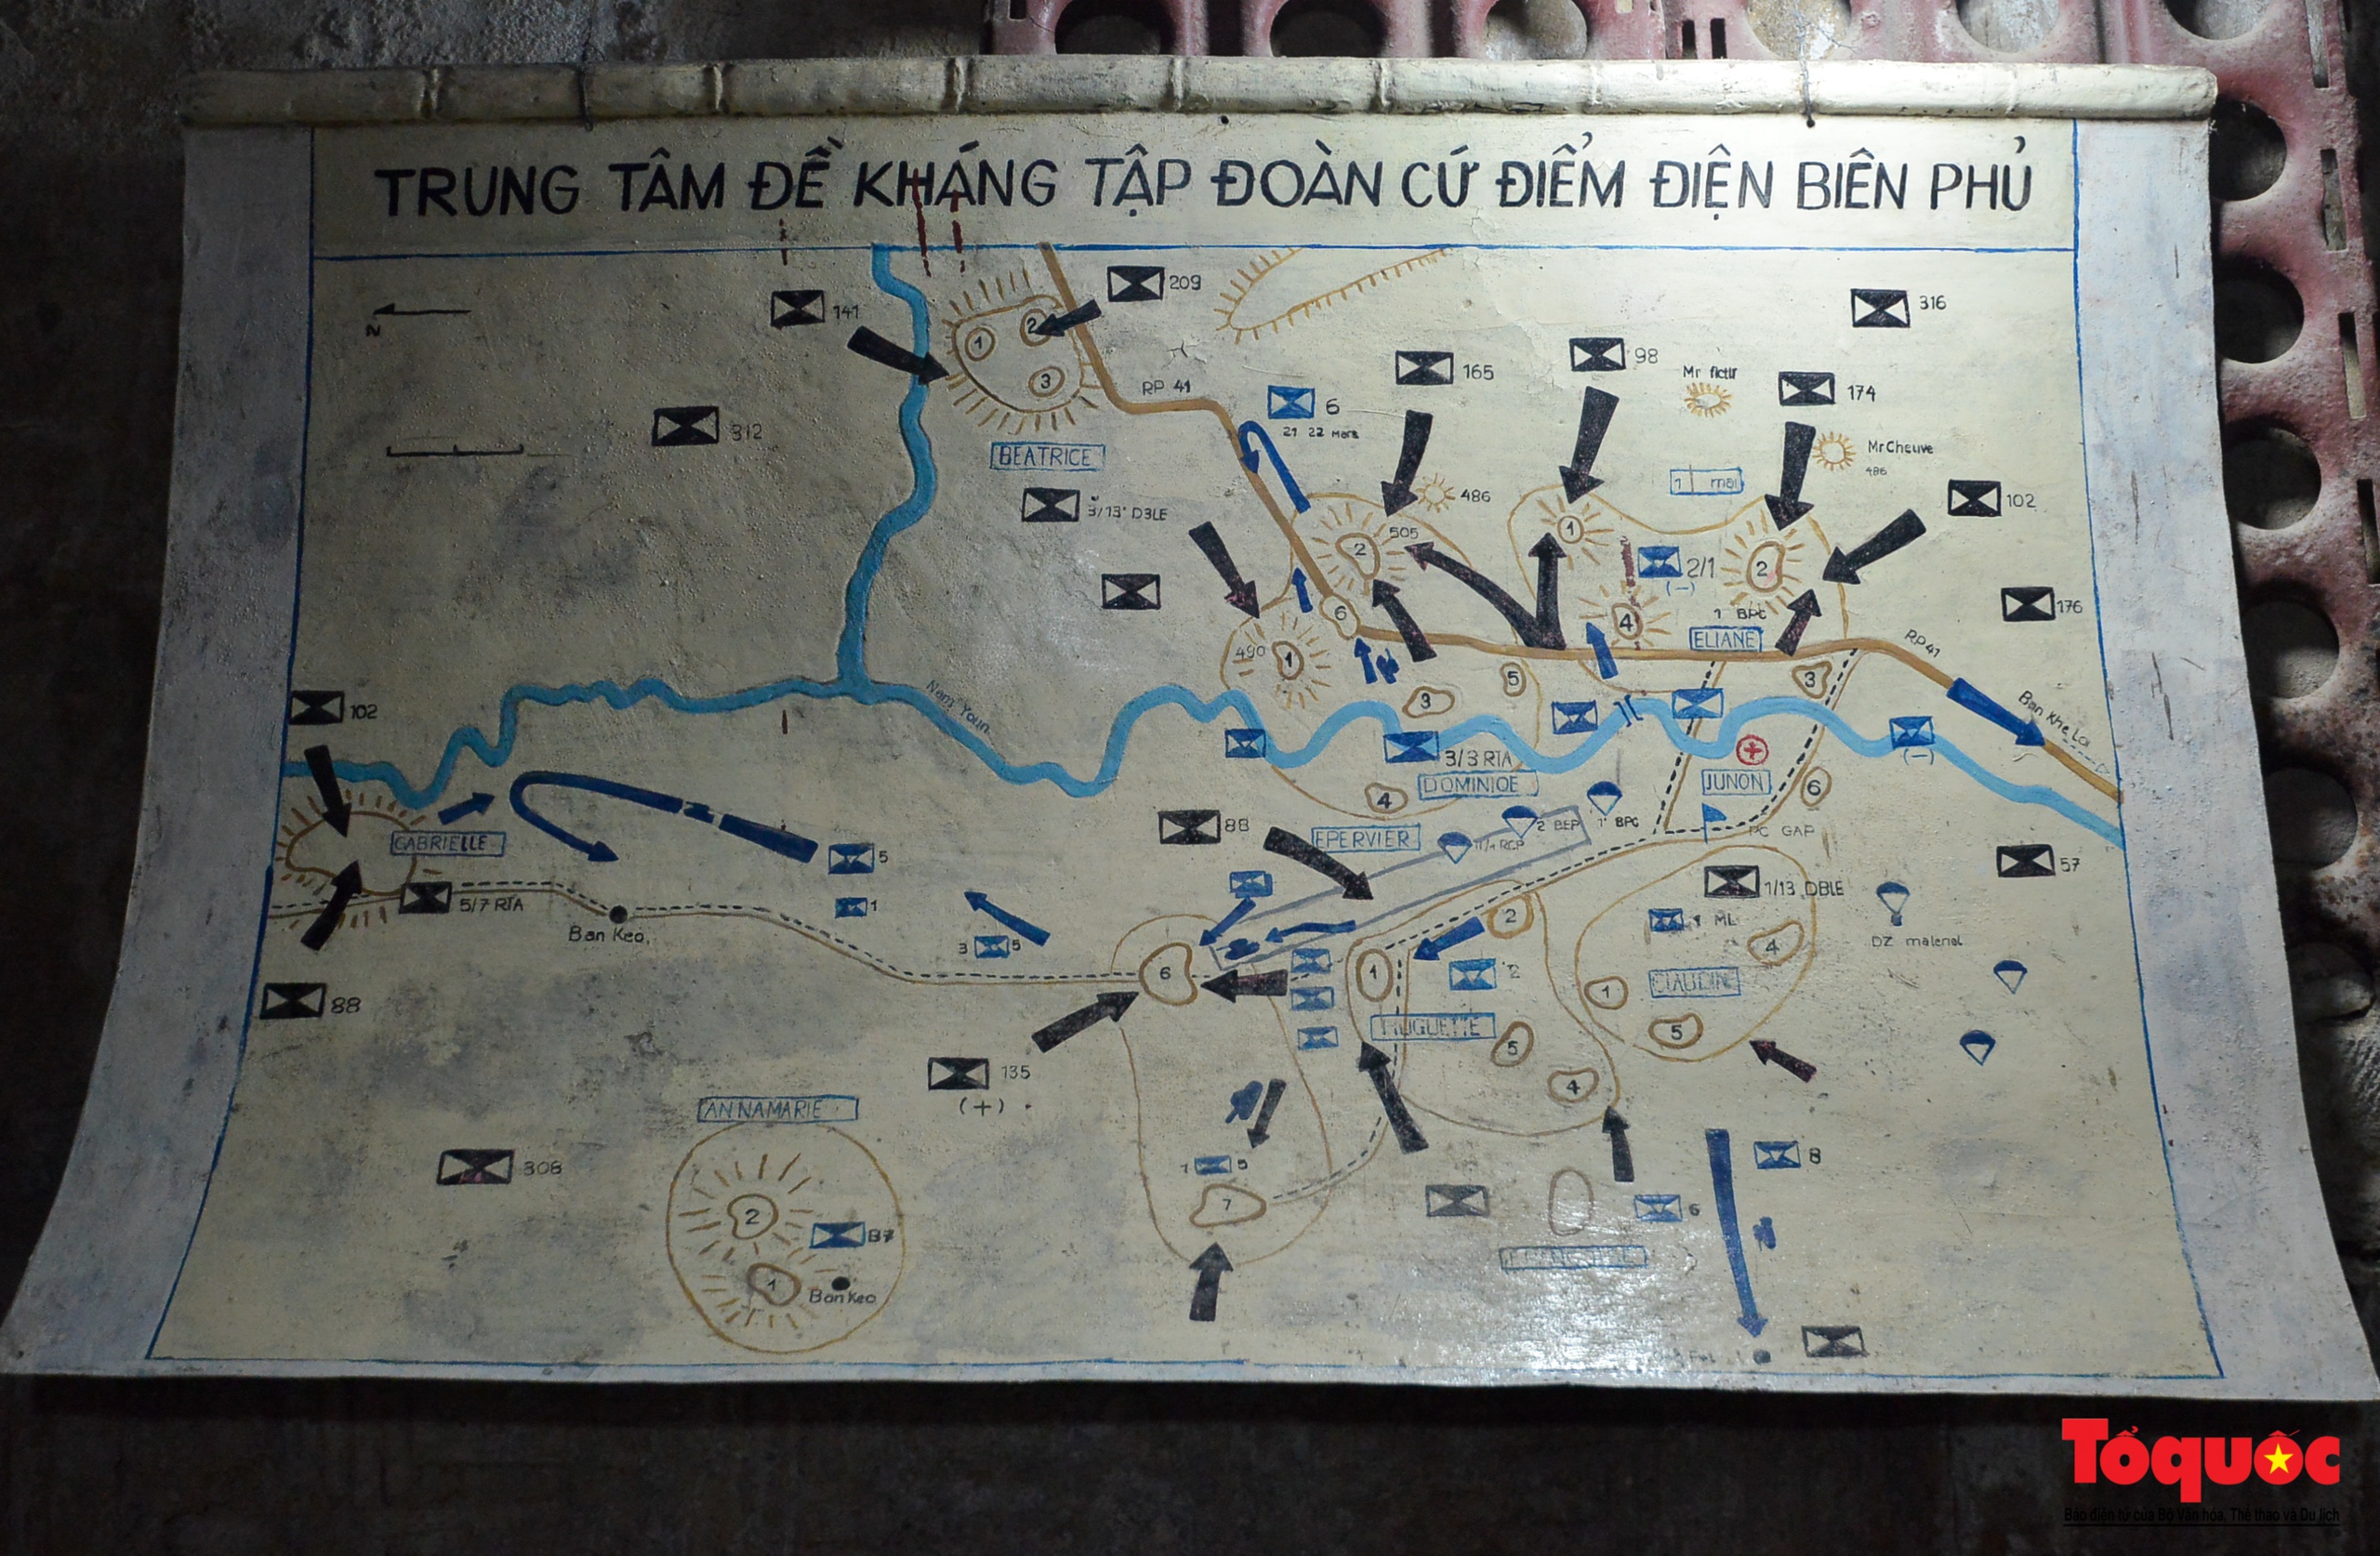 Tới căn hầm đặc biệt ở Điện Biên Phủ, nơi bắt sống tướng Đờ Cát cách đây 70 năm - Ảnh 10.